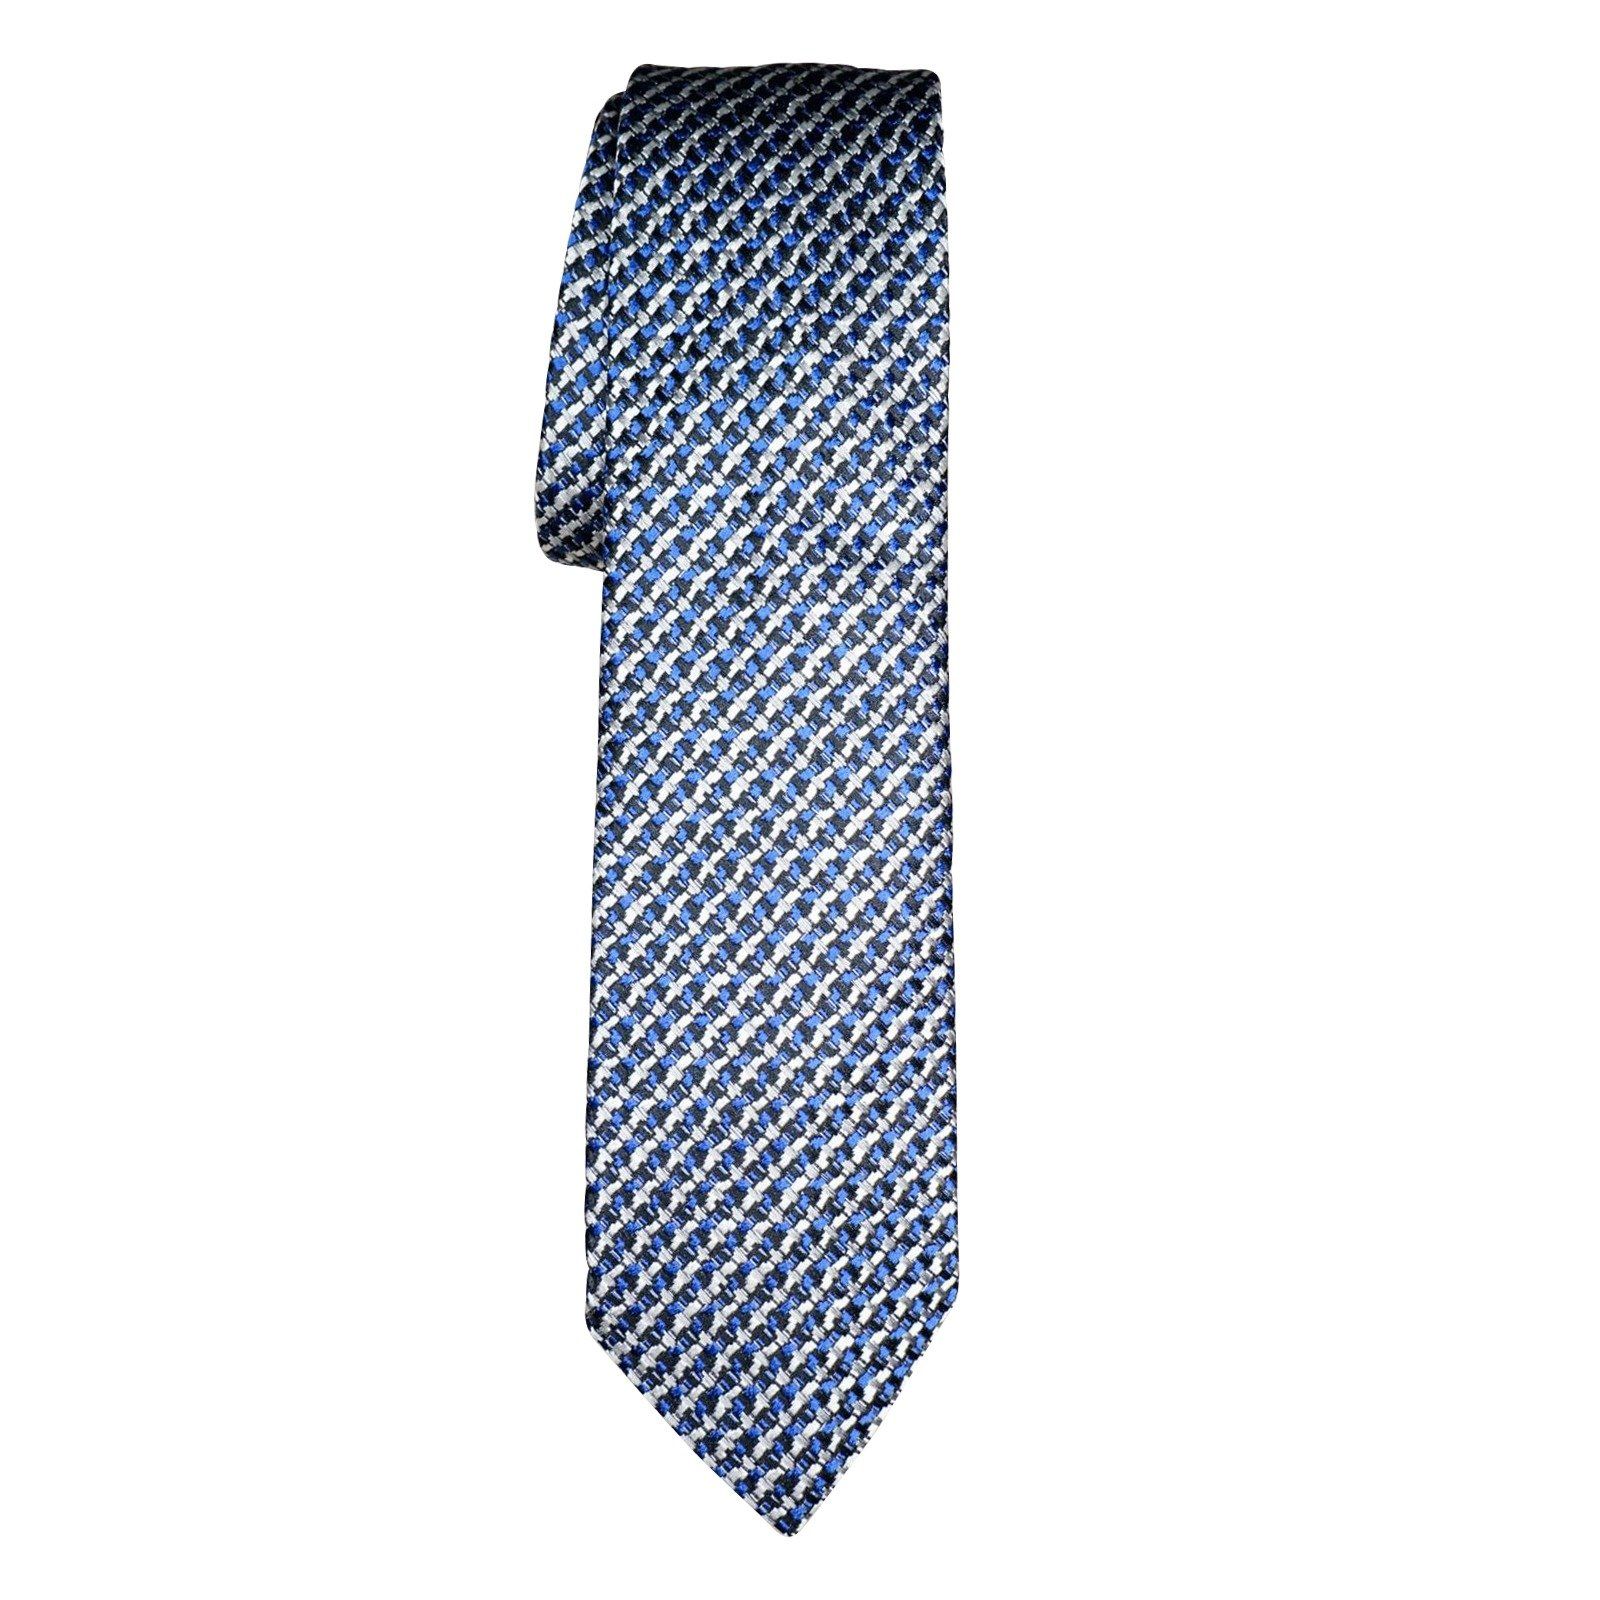 Lapis Canestro Luxury Necktie